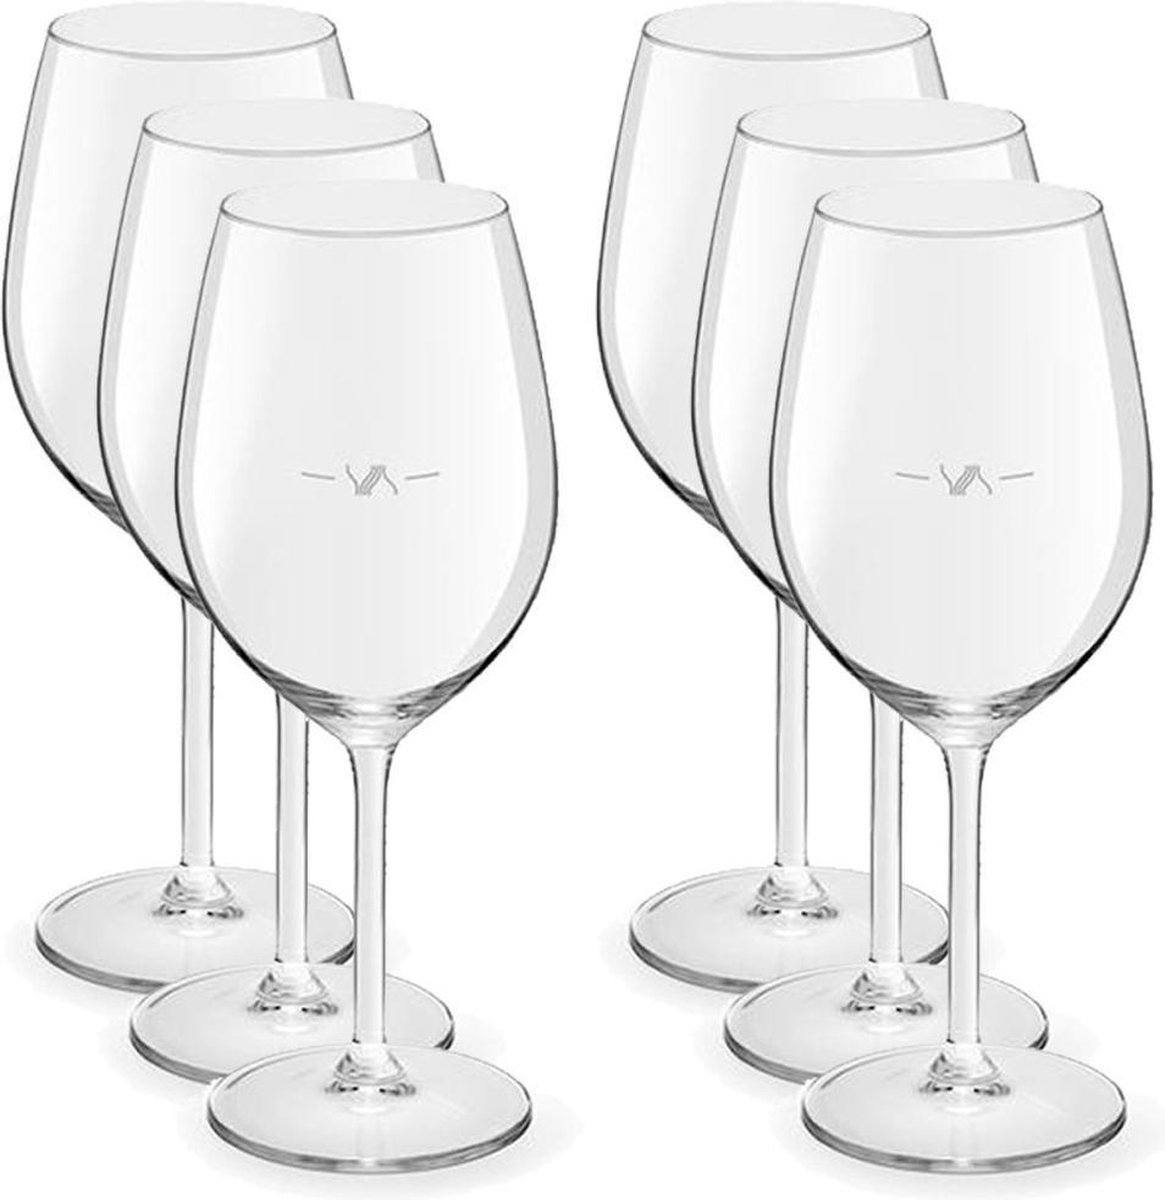 18x Luxe wijnglazen voor witte wijn 320 ml Esprit - 32 cl - Witte wijn glazen met maatstreep - Wijn drinken - Wijnglazen van glas